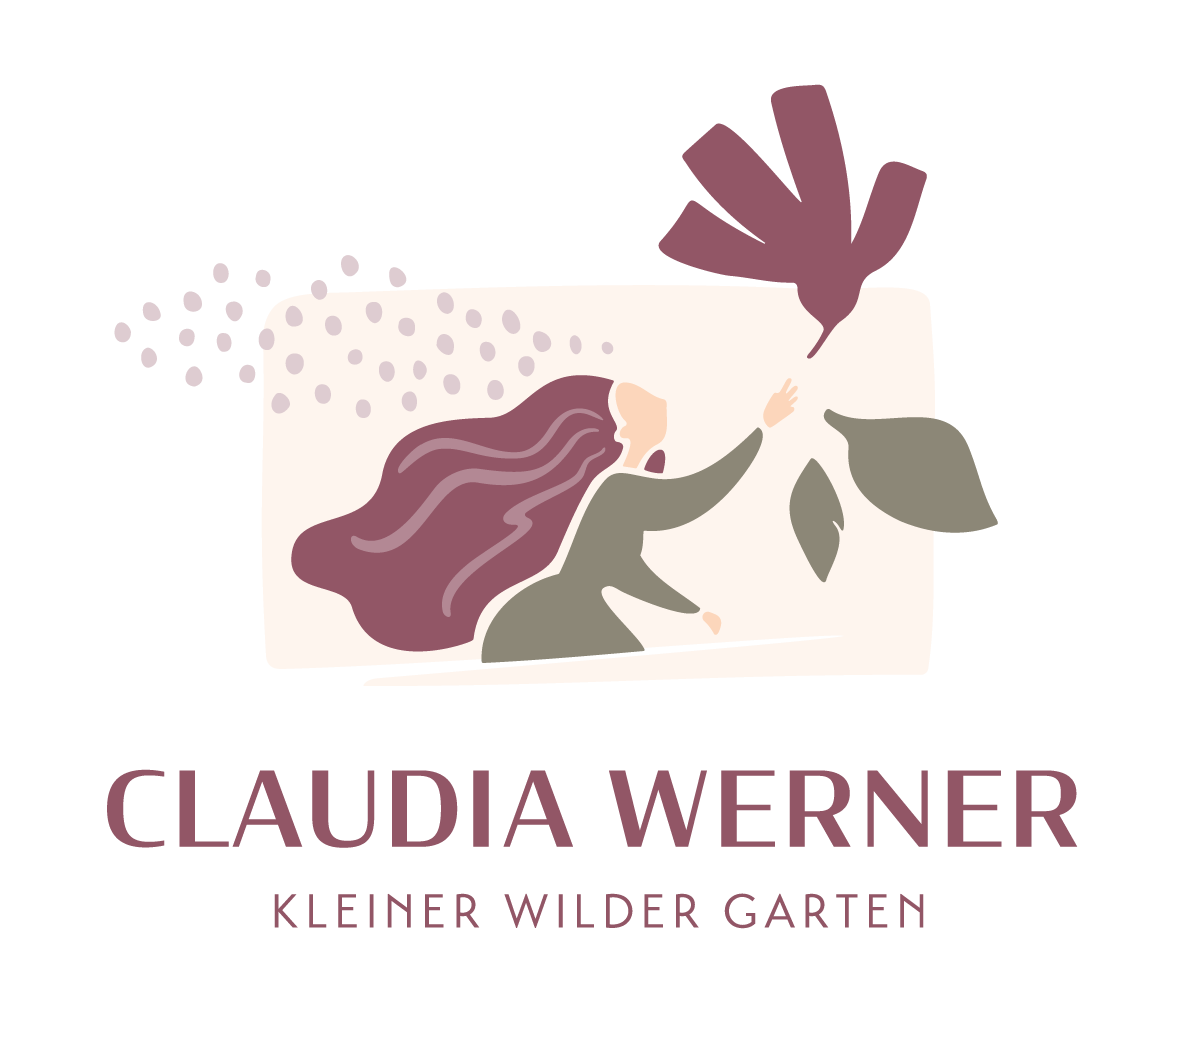 Claudia Werner Kleiner Wilder Garten Logo